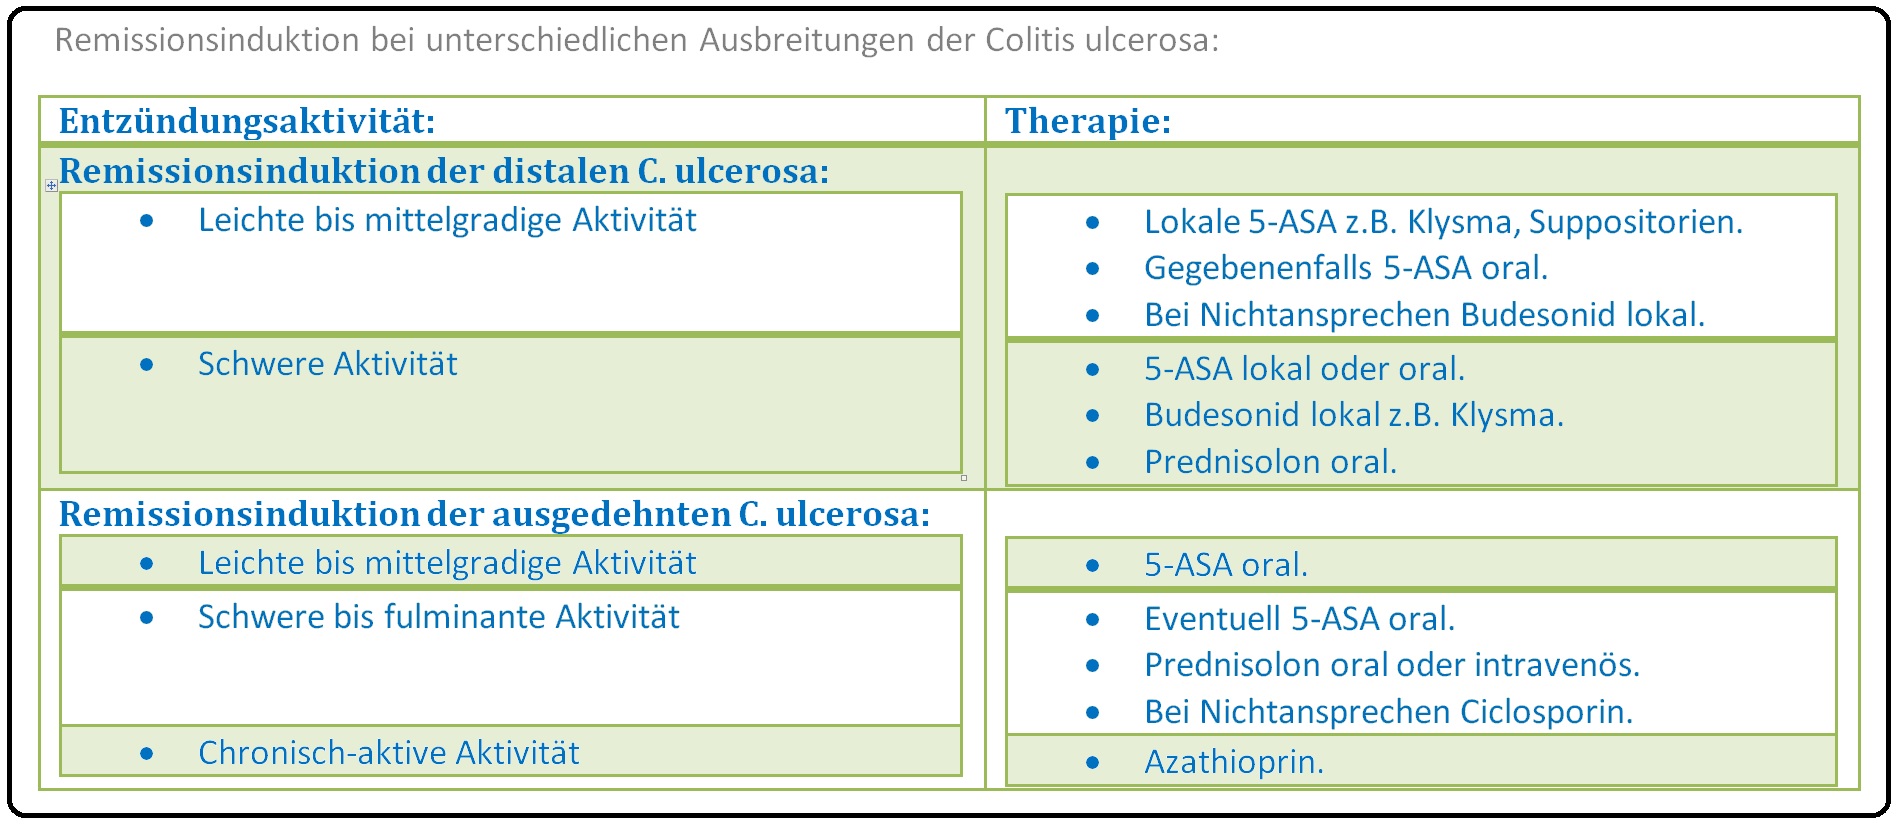 563 Remissionsinduktion bei unterschiedlichen Ausbreitungen der Colitis ulcerosa